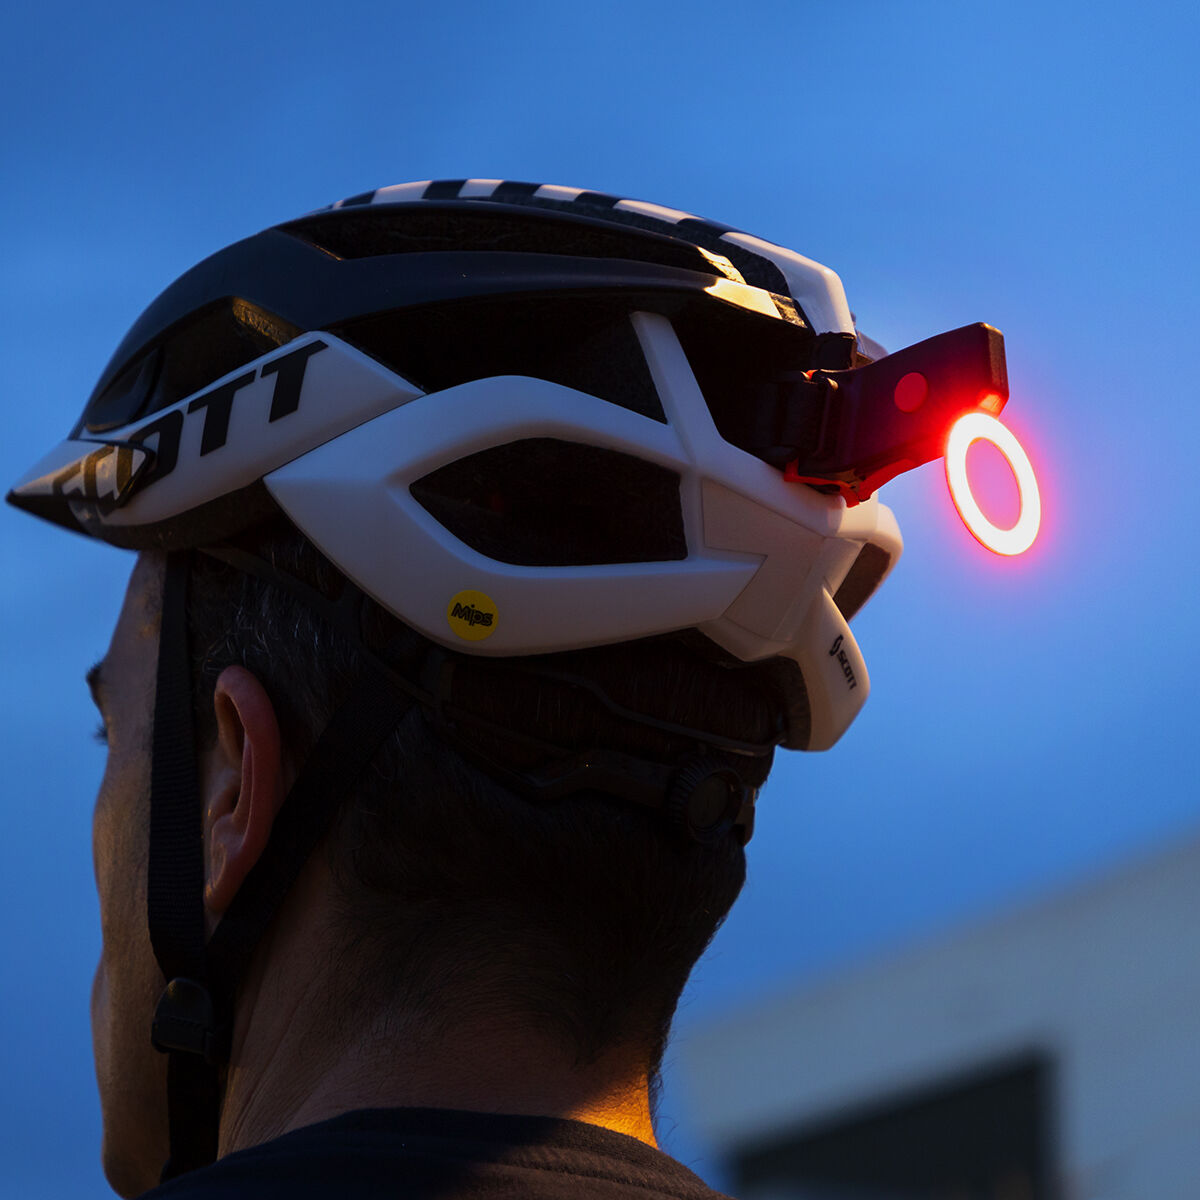 LED-Fahrradrücklicht Biklium InnovaGoods